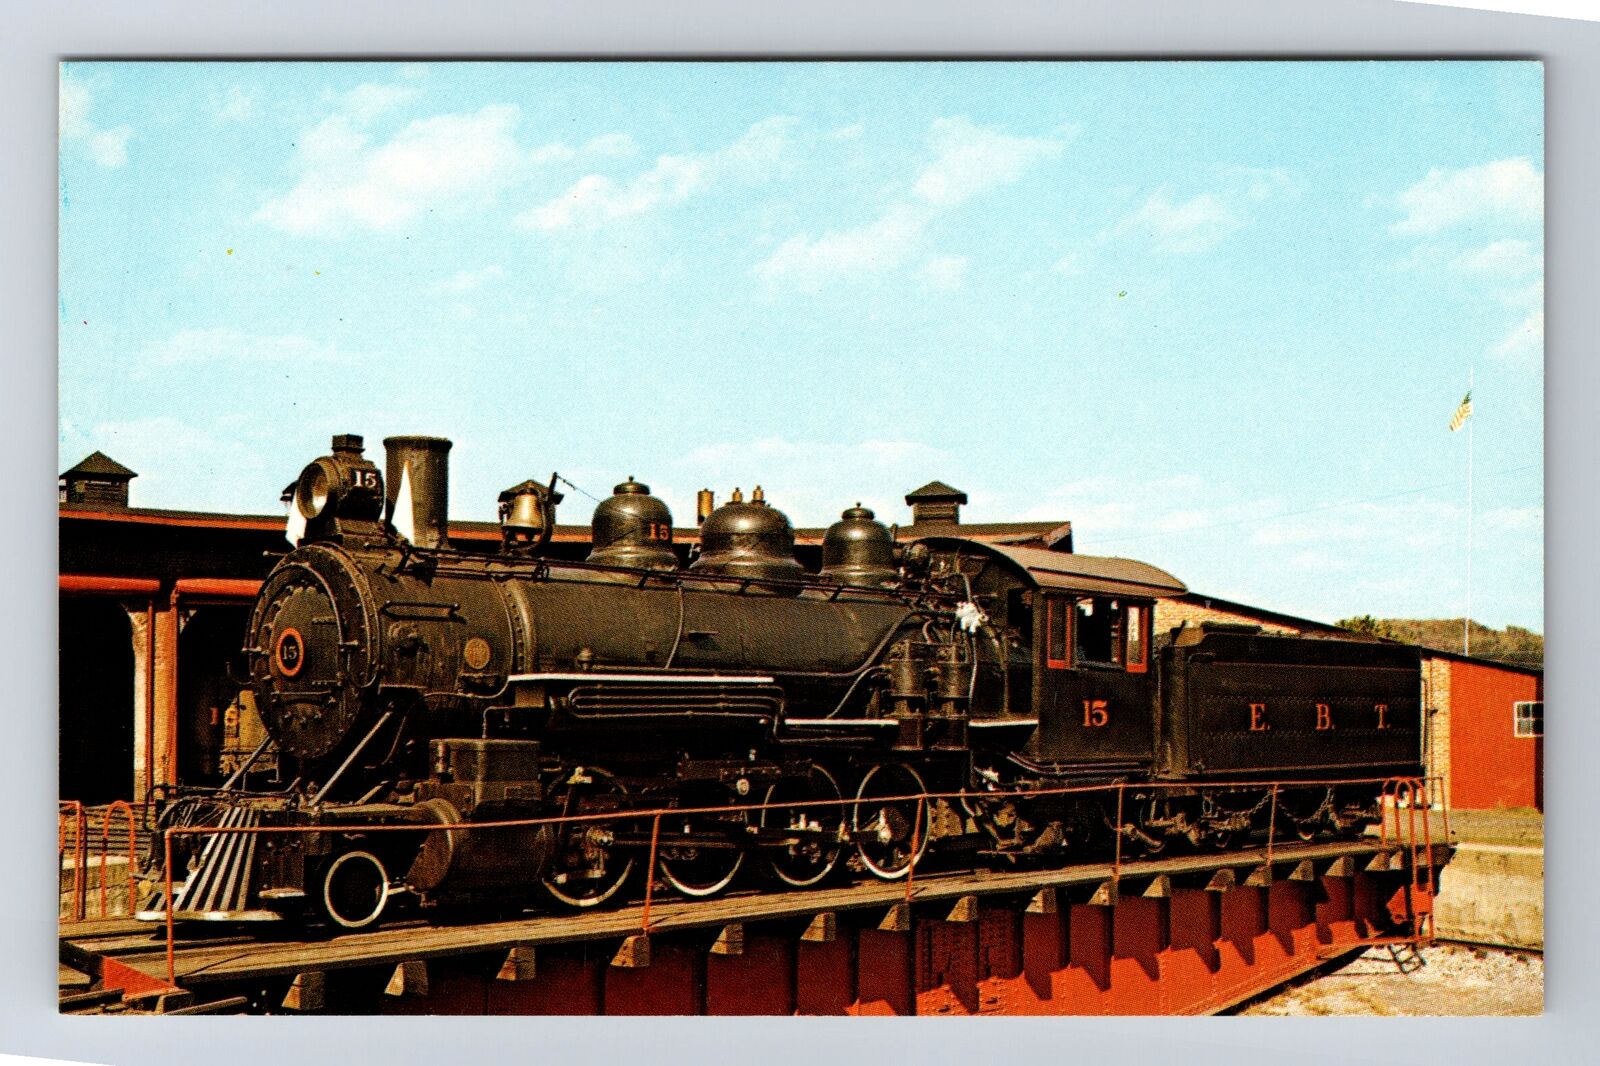 East Broad Top RR Engine Number 15 on Turntable Transportation Vintage Postcard